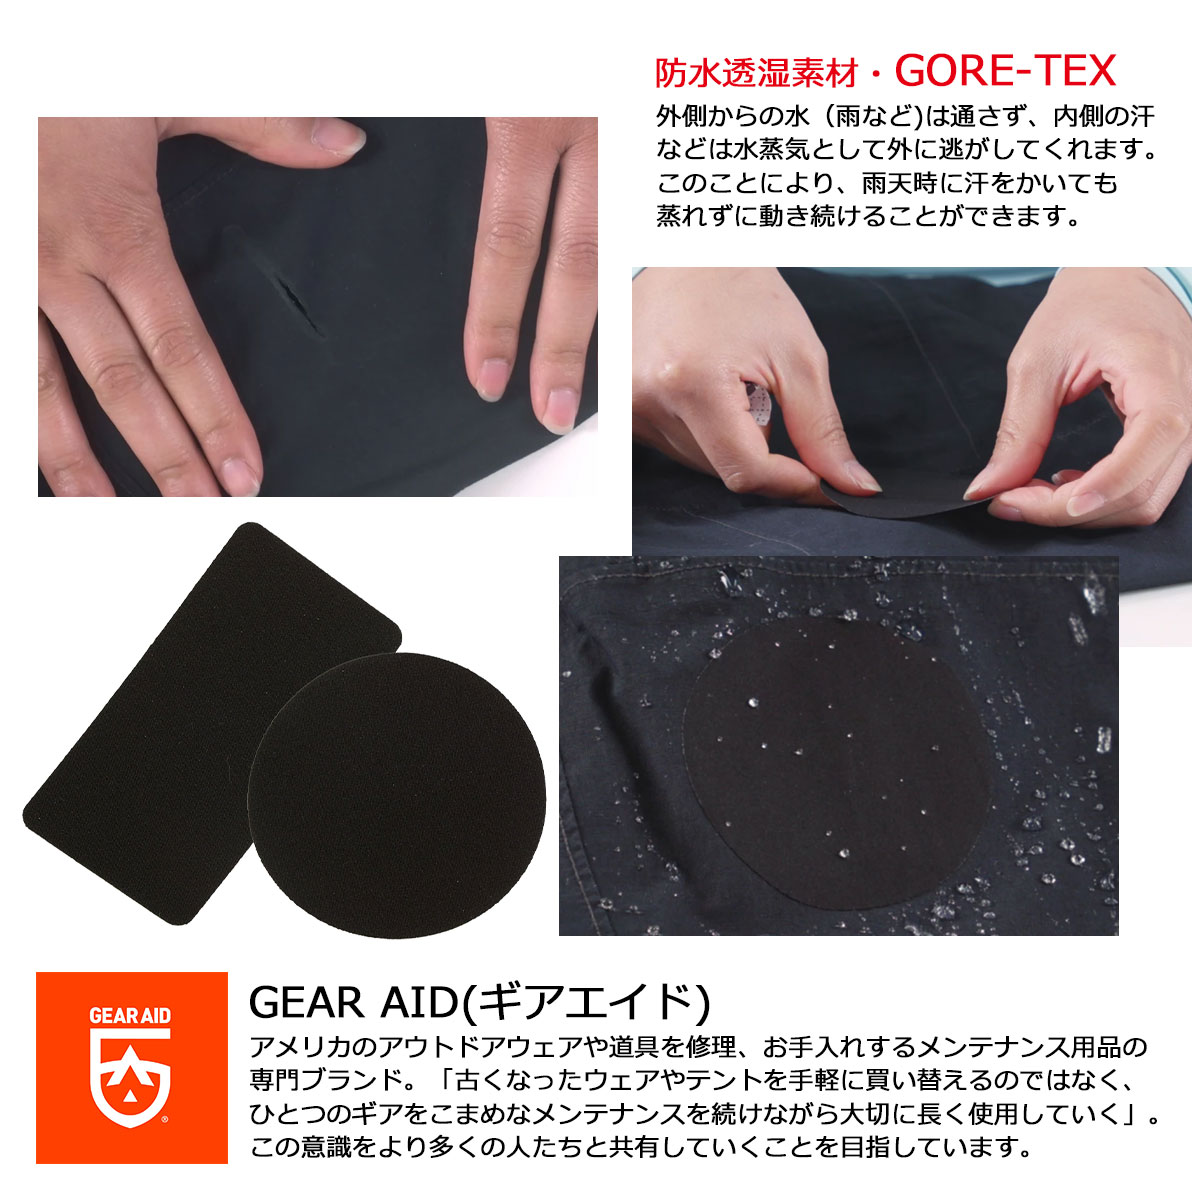 楽天市場 Gear Aid ギアエイド ゴアテックス 補修テープ アウトドア Goretex Gore Tex Gearaid 東京道具商会